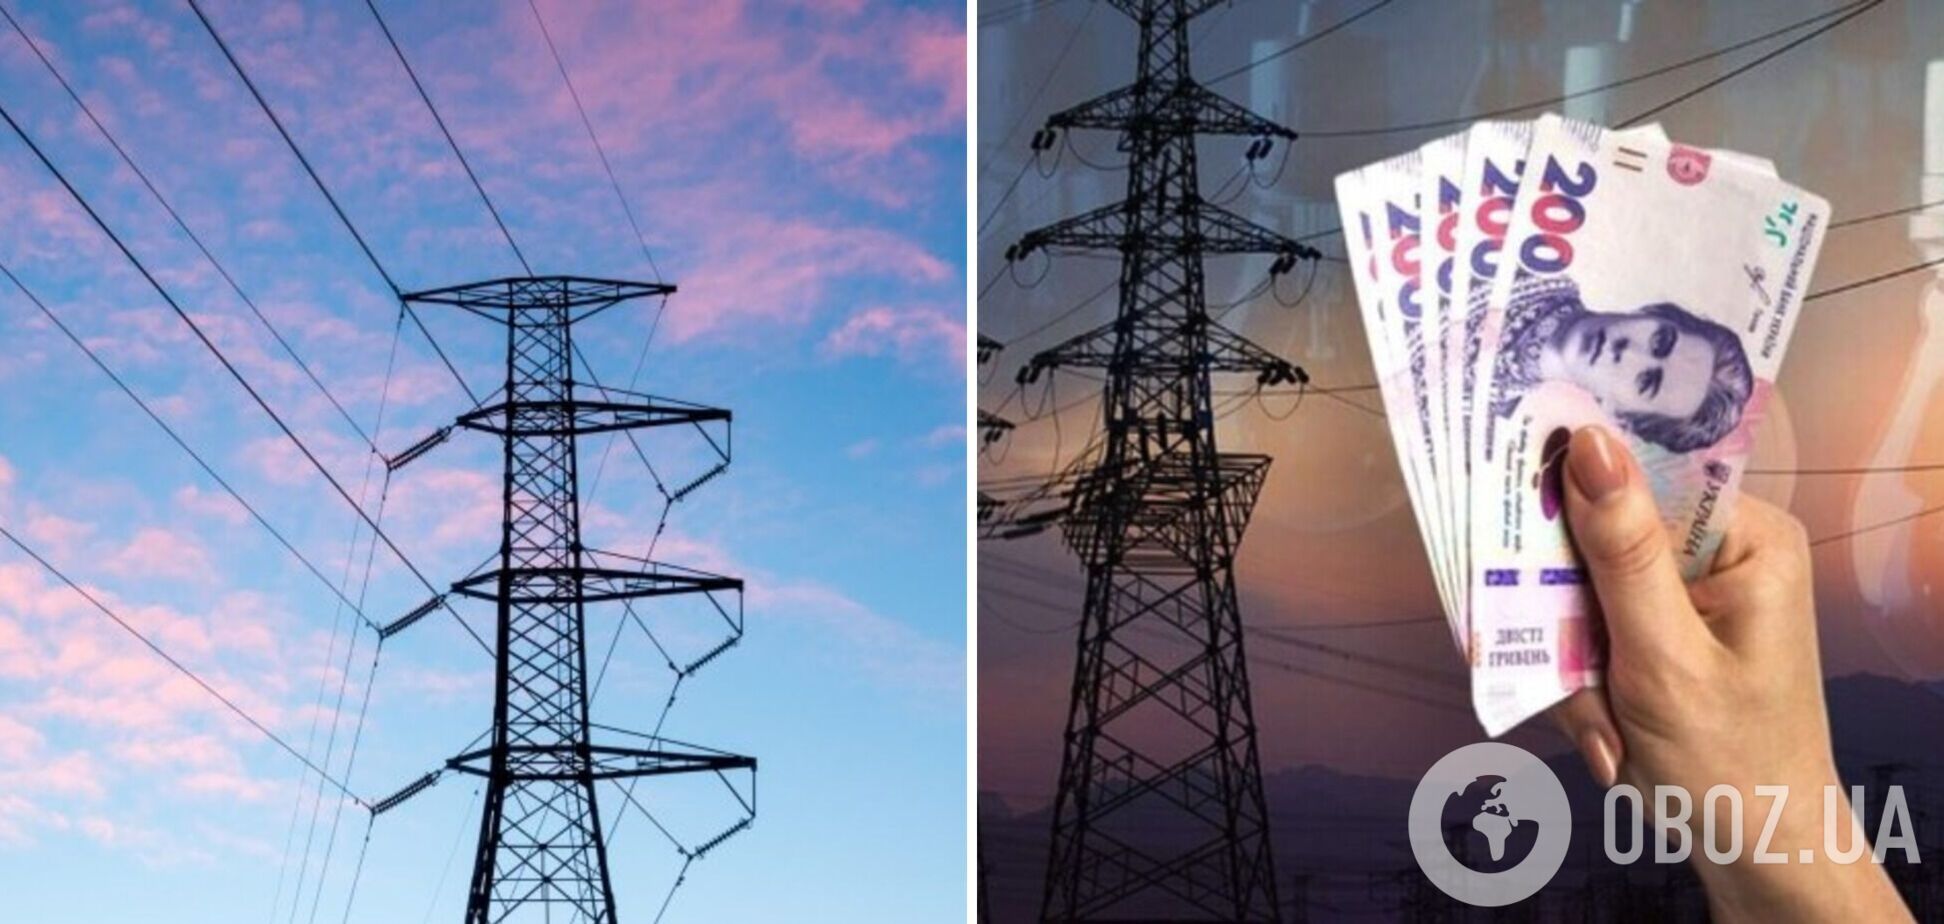 Отмена предельных цен на рынке электроэнергии улучшит ситуацию – Минэнерго